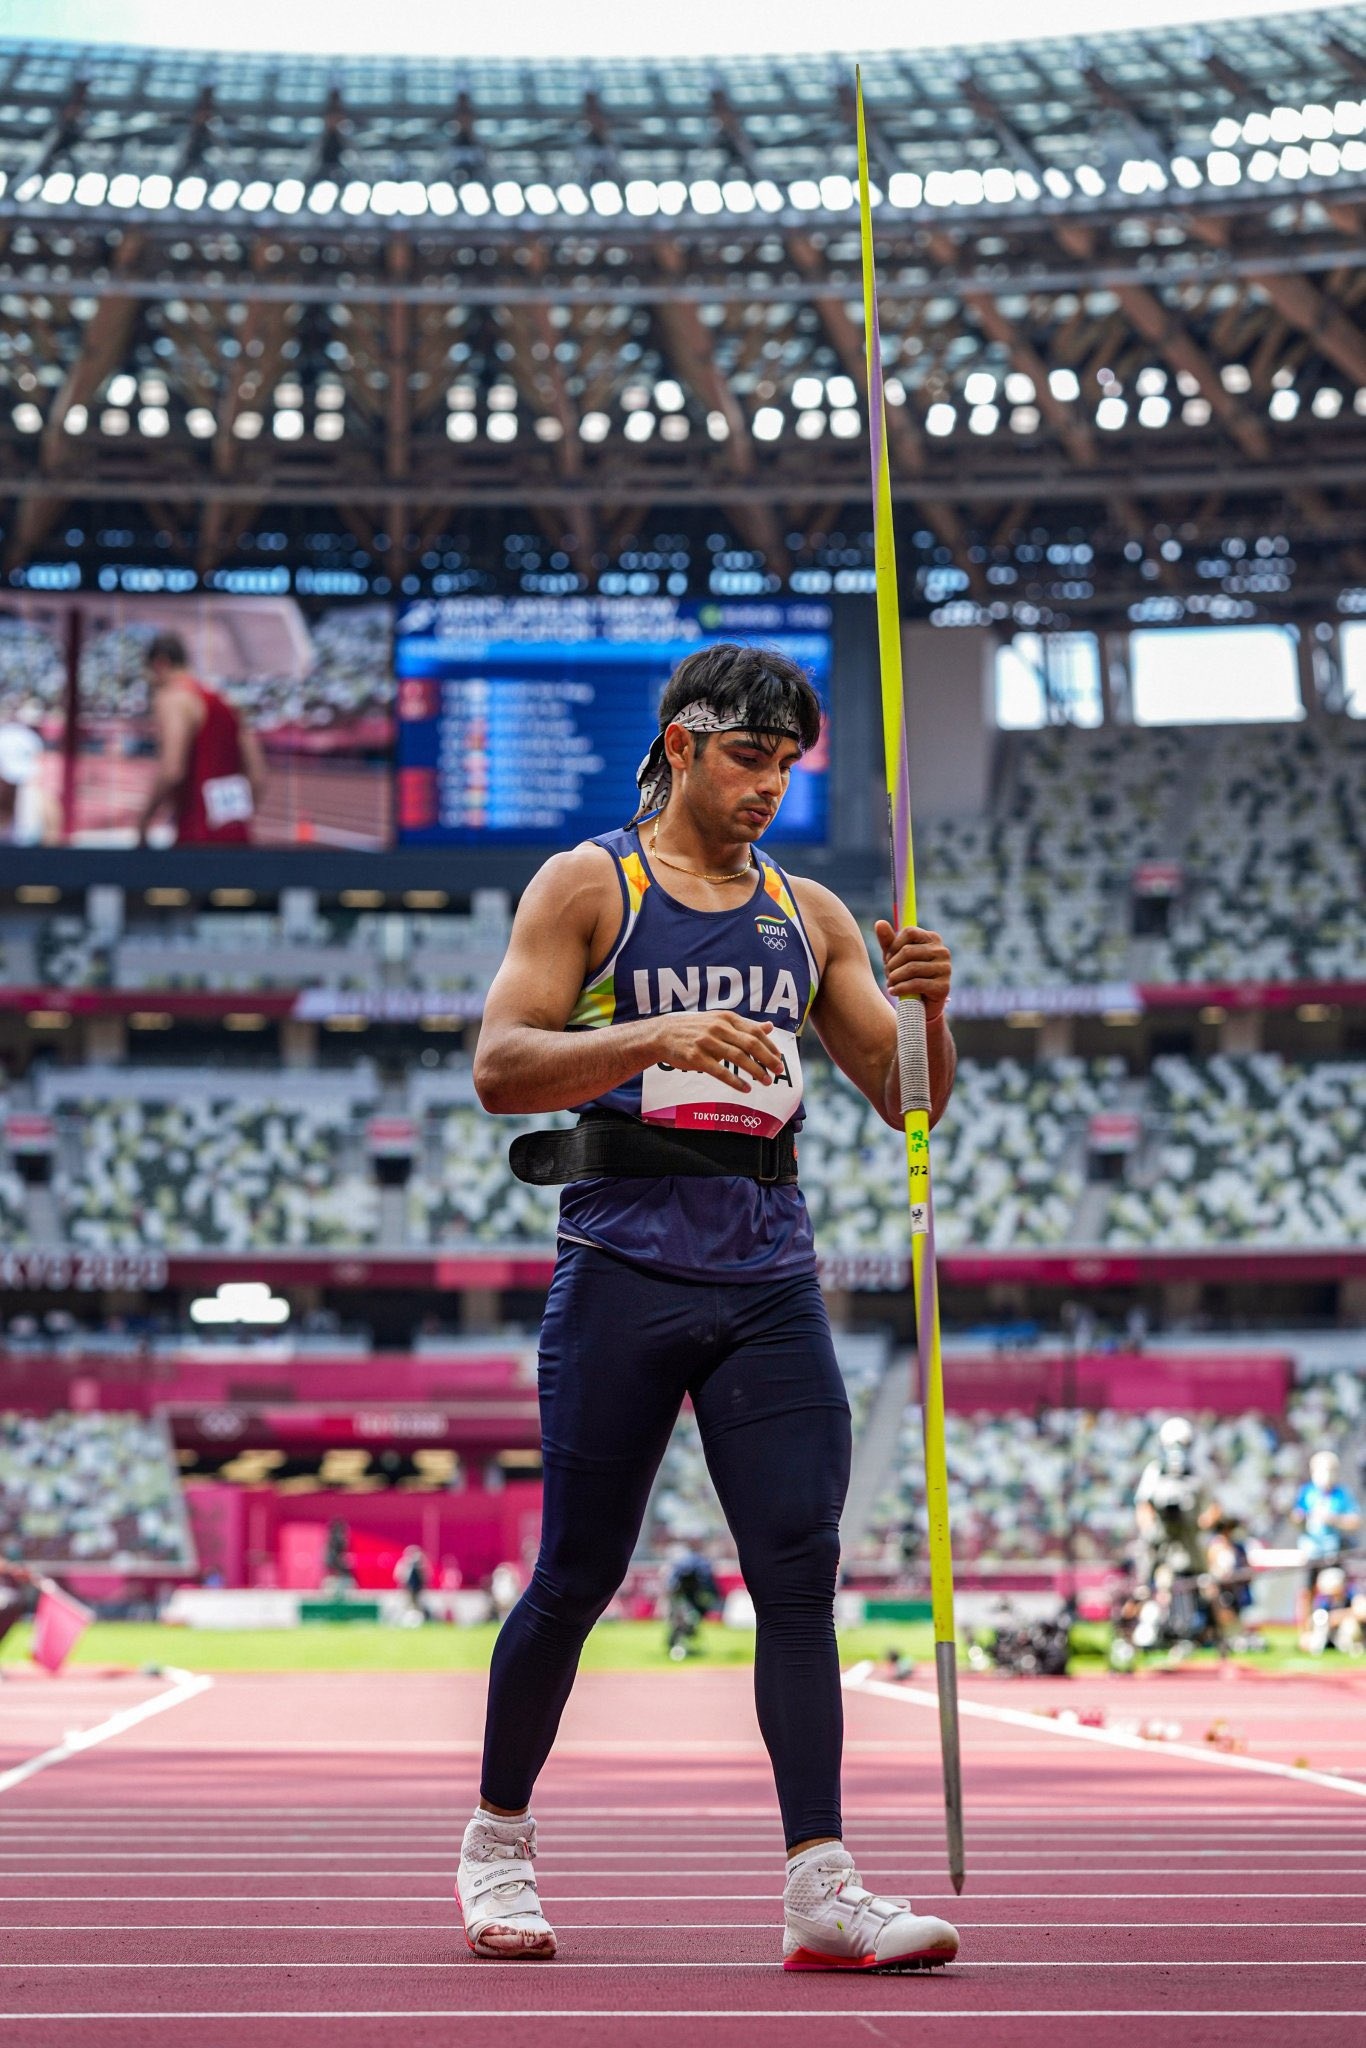 Olympics medalist Neeraj chopra